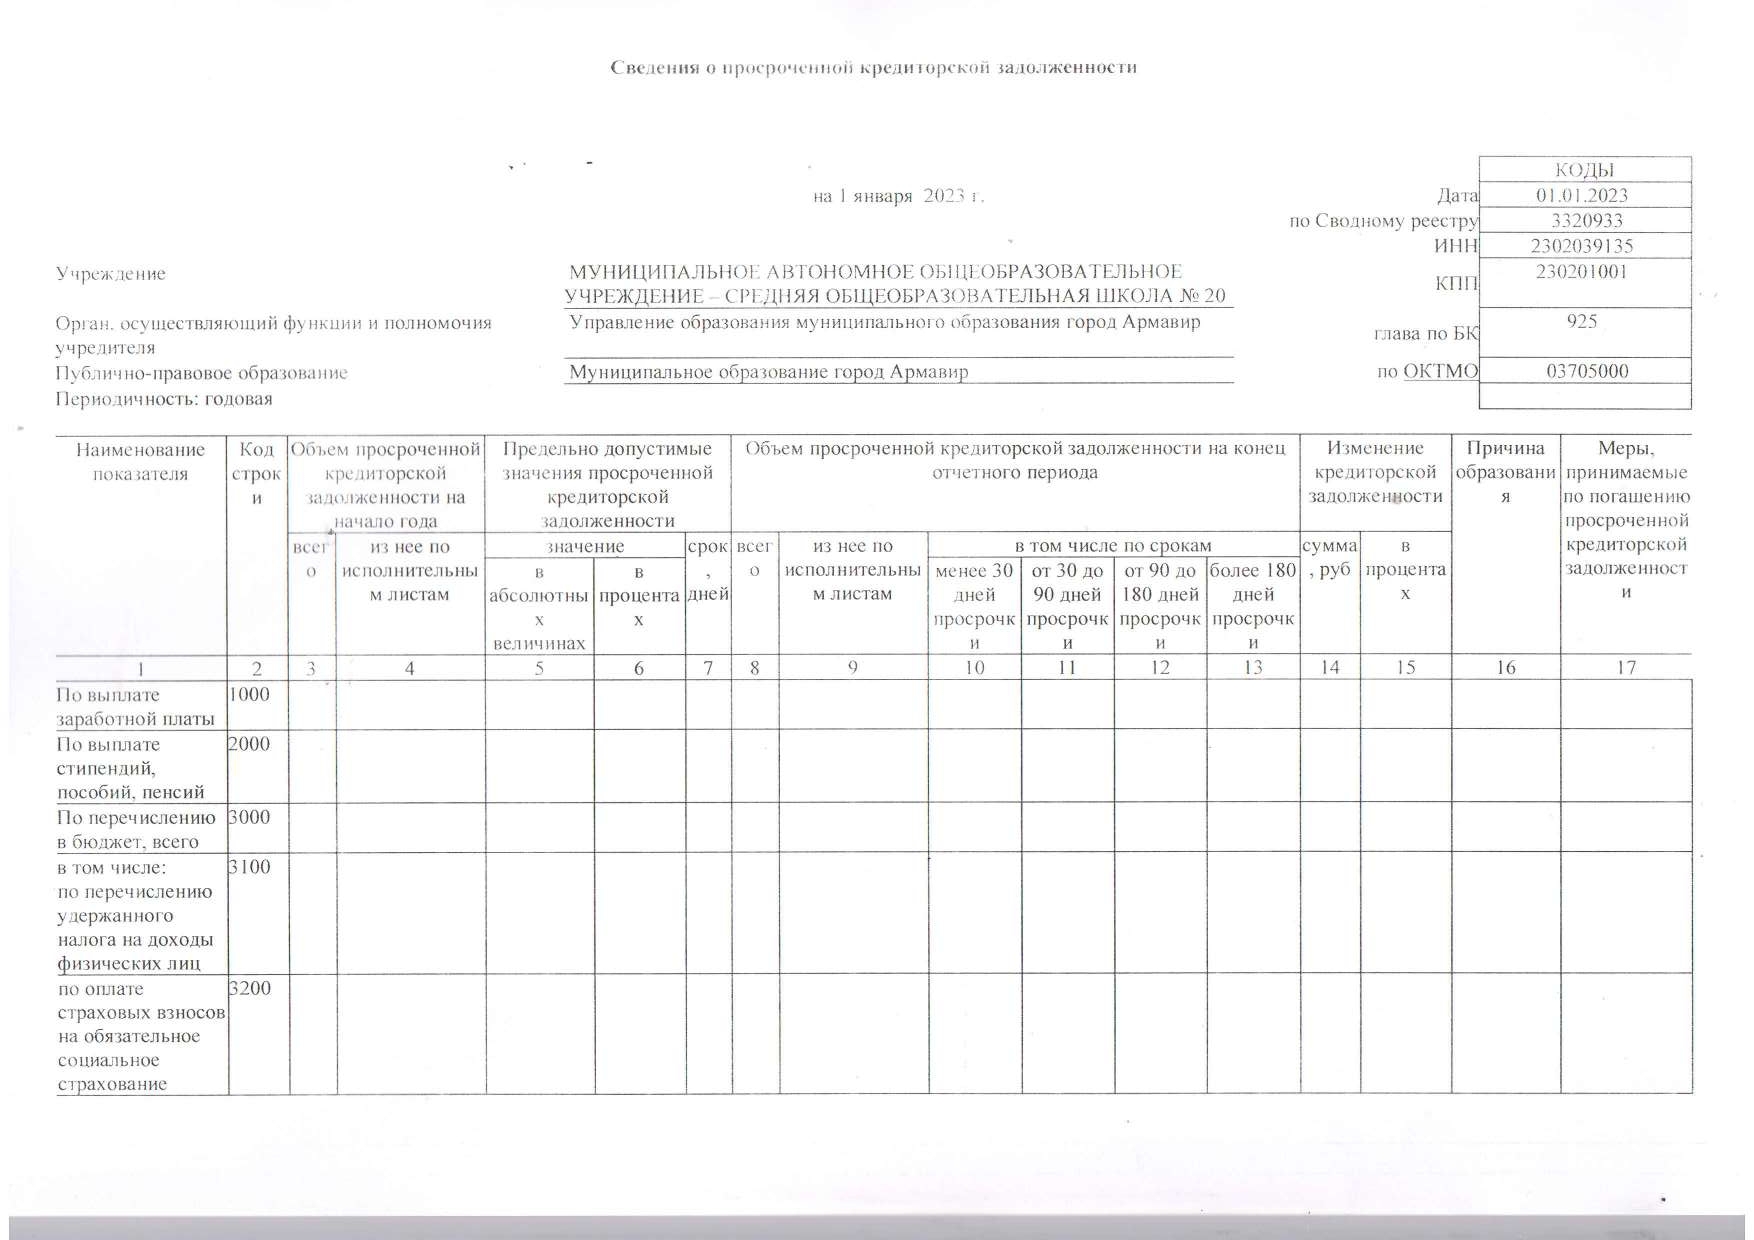 Отчет о результатах деятельности муниципального учреждения на 01.01.2023 г_page-0006.jpg